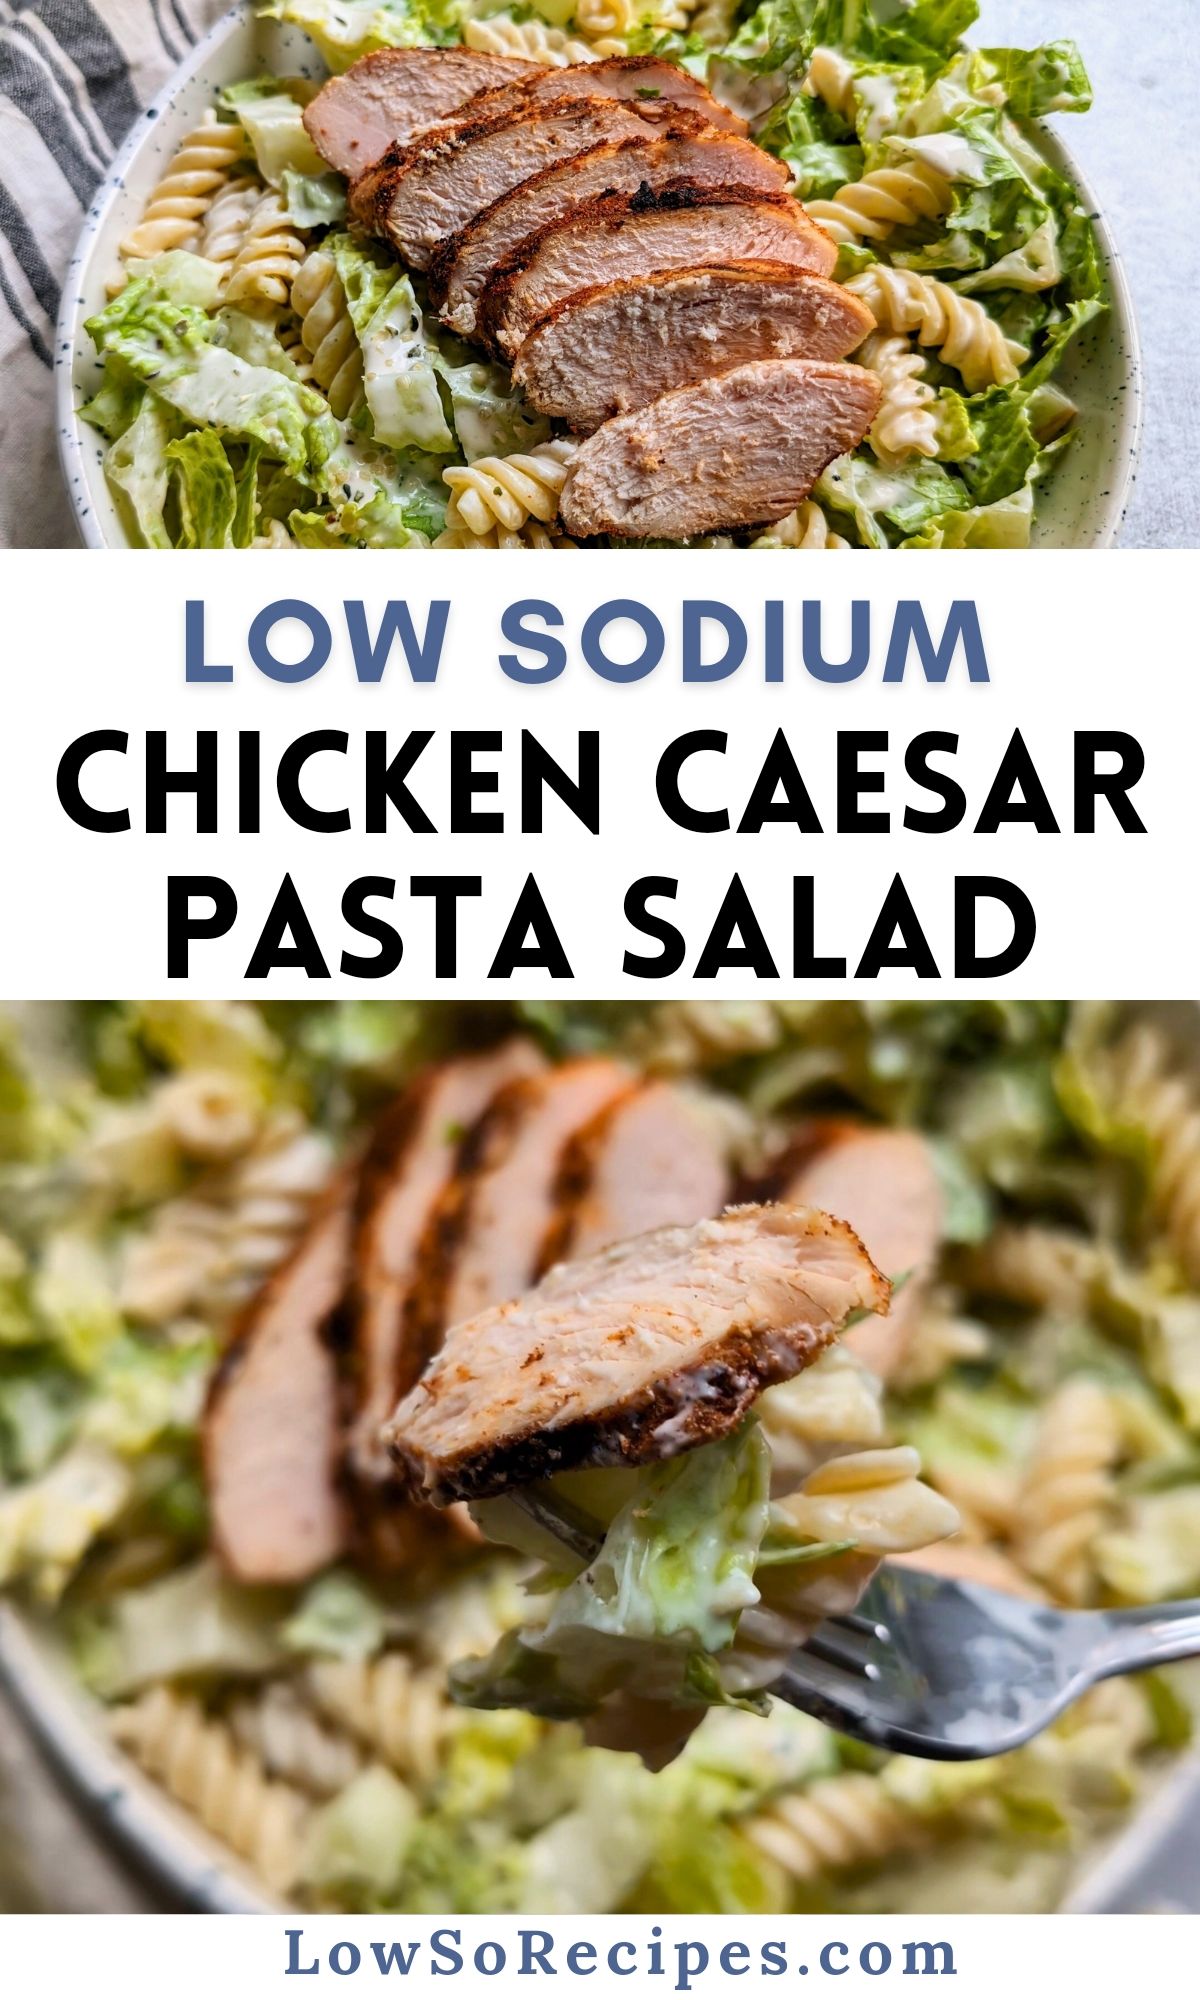 low sodium chicken caesar pasta salad recipe with grilled chicken a low sodium creamy Caesar dressing and rotini pasta 